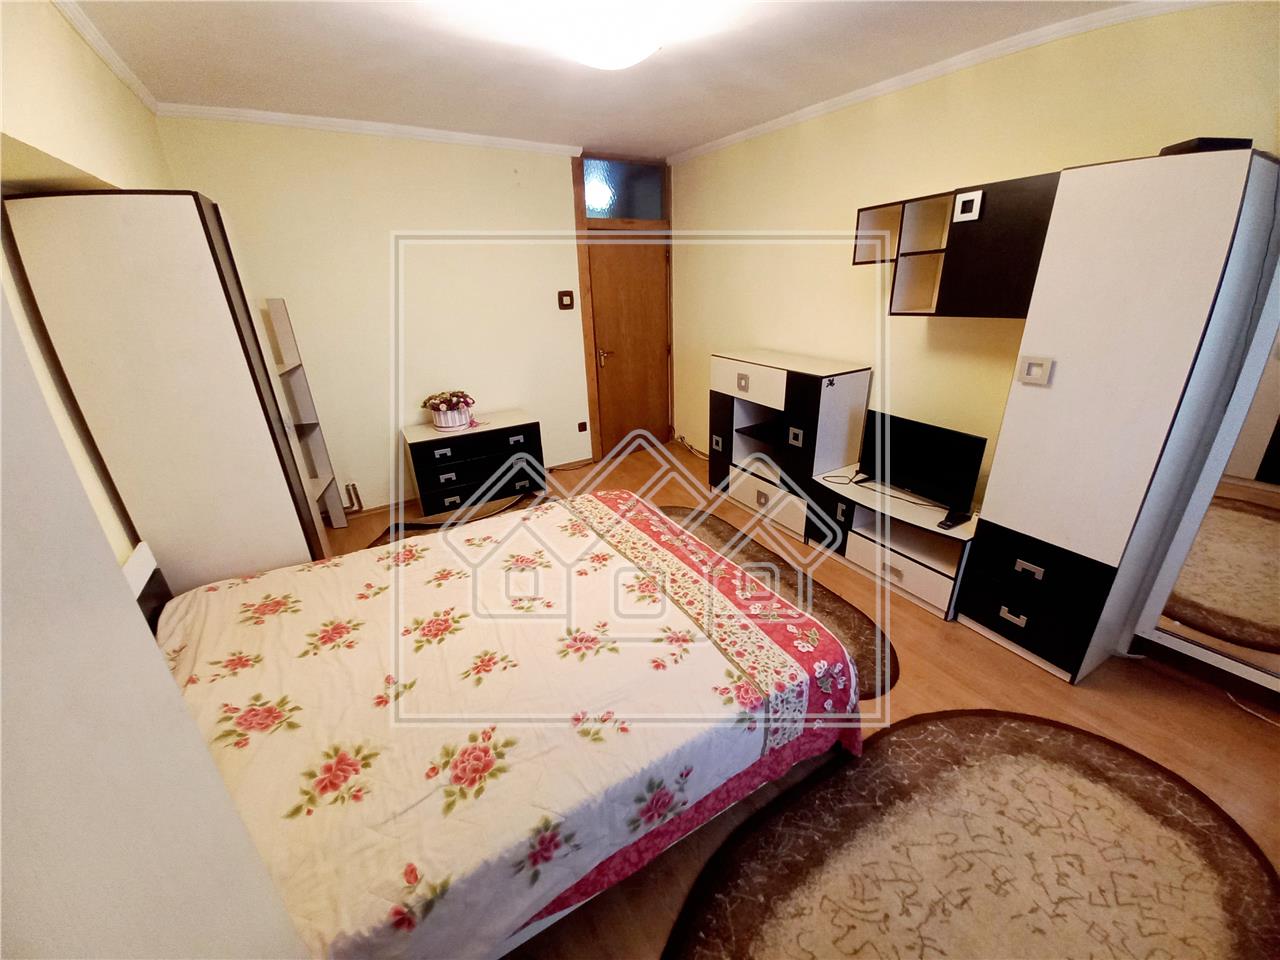 Wohnung zur Miete in Alba Iulia - 3 Zimmer - 2 Badezimmer - Parkplatz